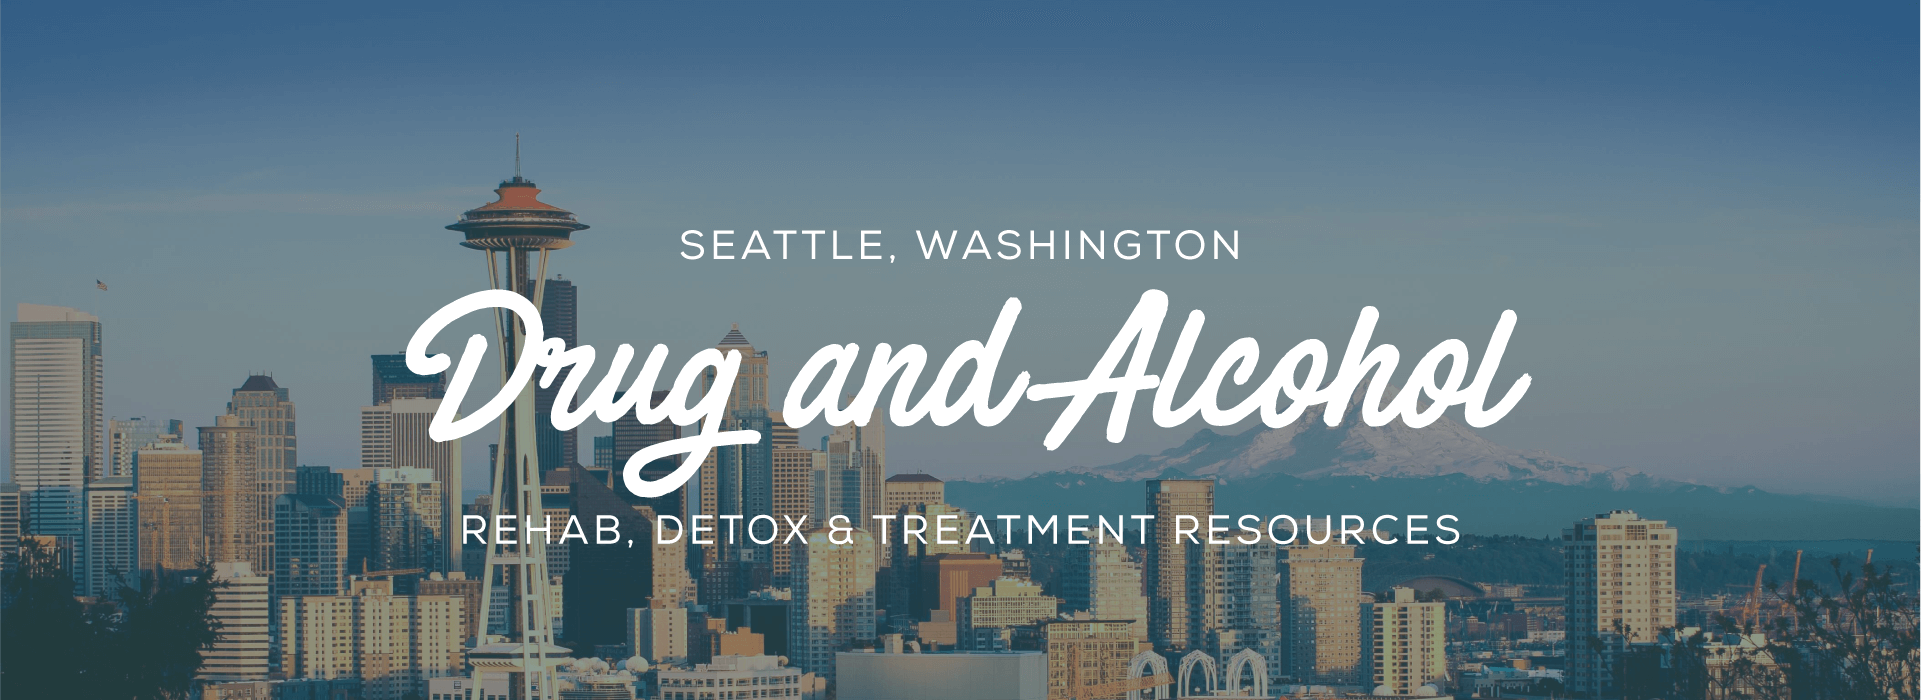 Seattle, Washington Addiction Information